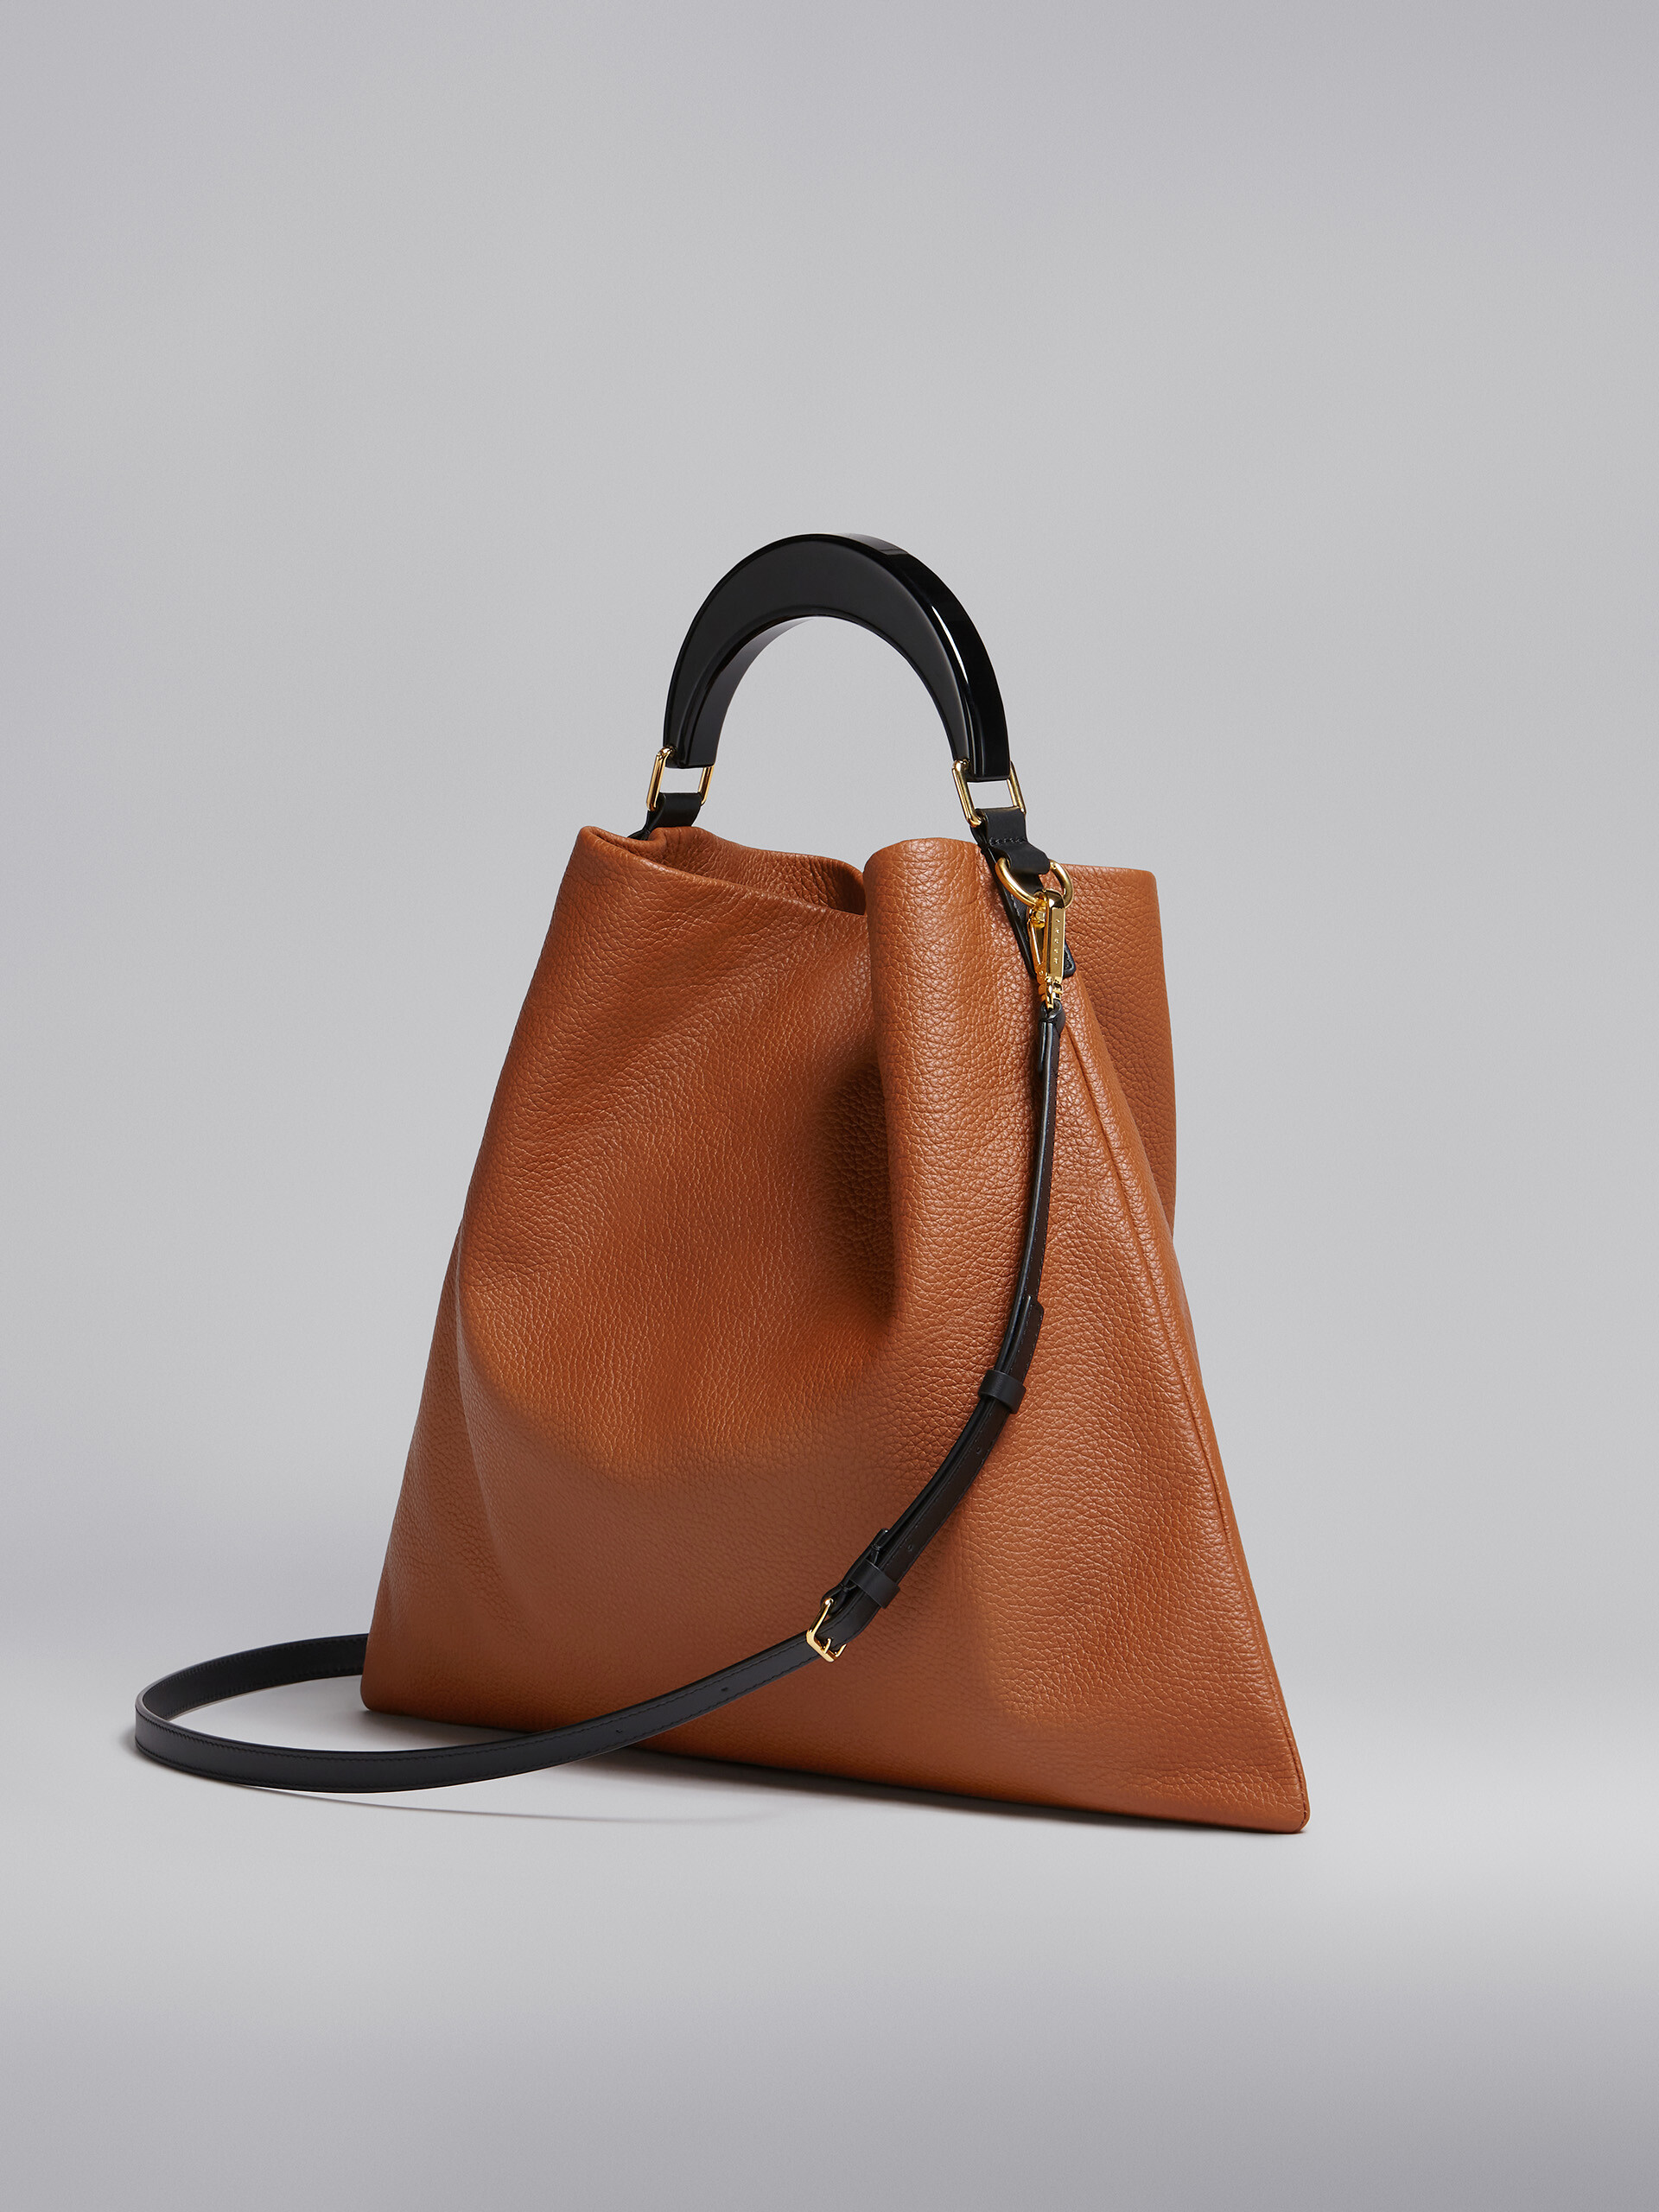 Venice medium bag in brown leather - Shoulder Bag - Image 3